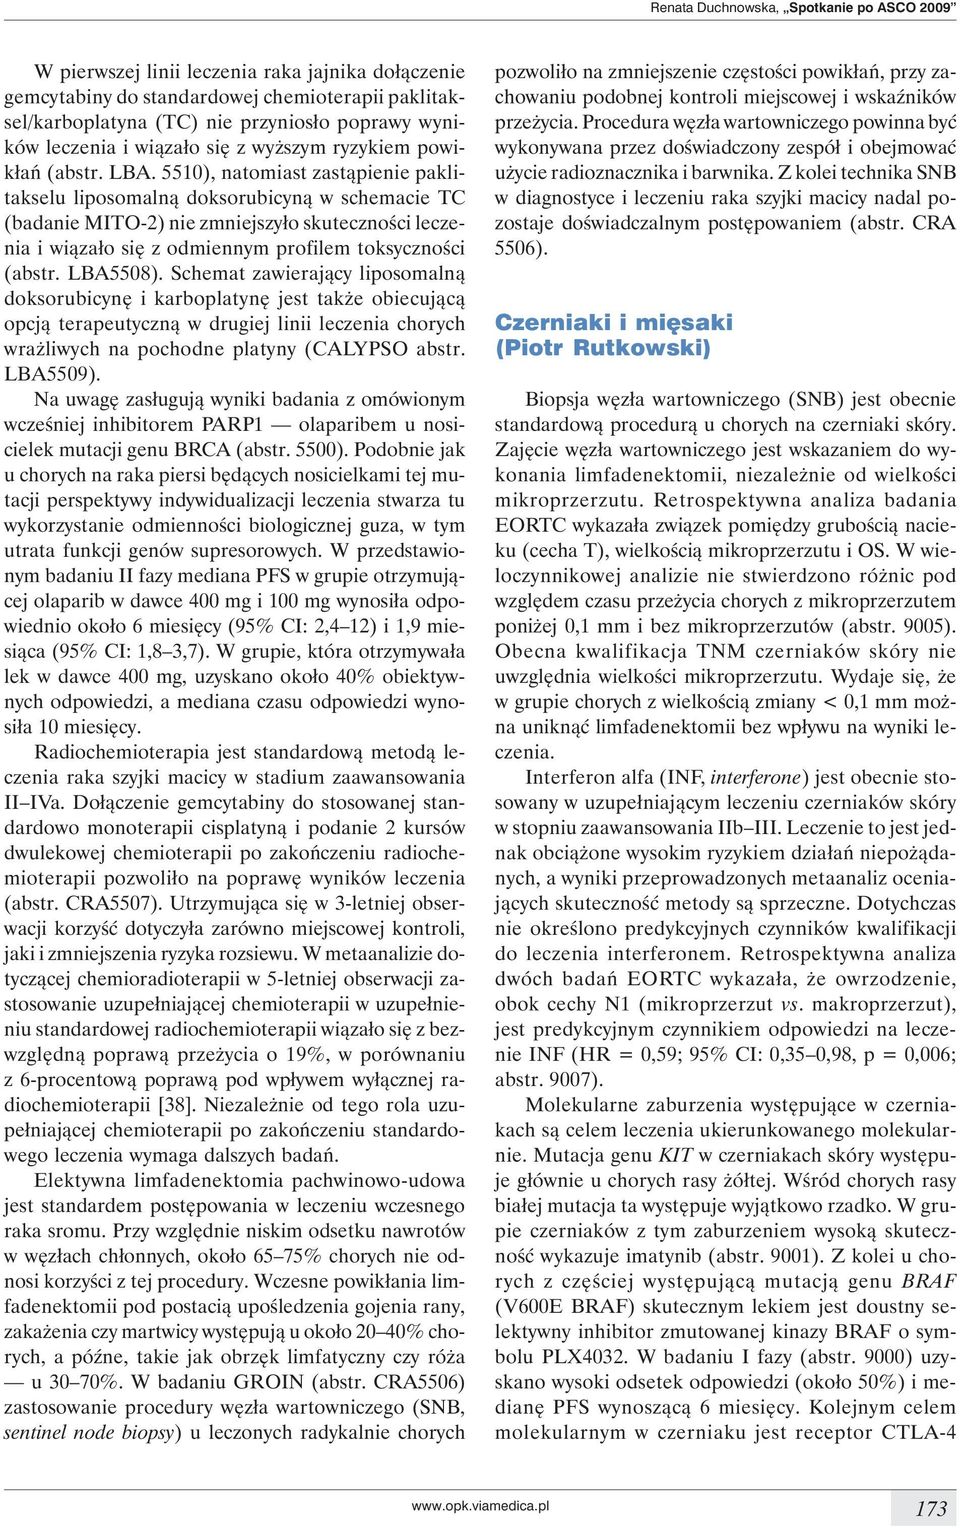 5510), natomiast zastąpienie paklitakselu liposomalną doksorubicyną w schemacie TC (badanie MITO-2) nie zmniejszyło skuteczności leczenia i wiązało się z odmiennym profilem toksyczności (abstr.